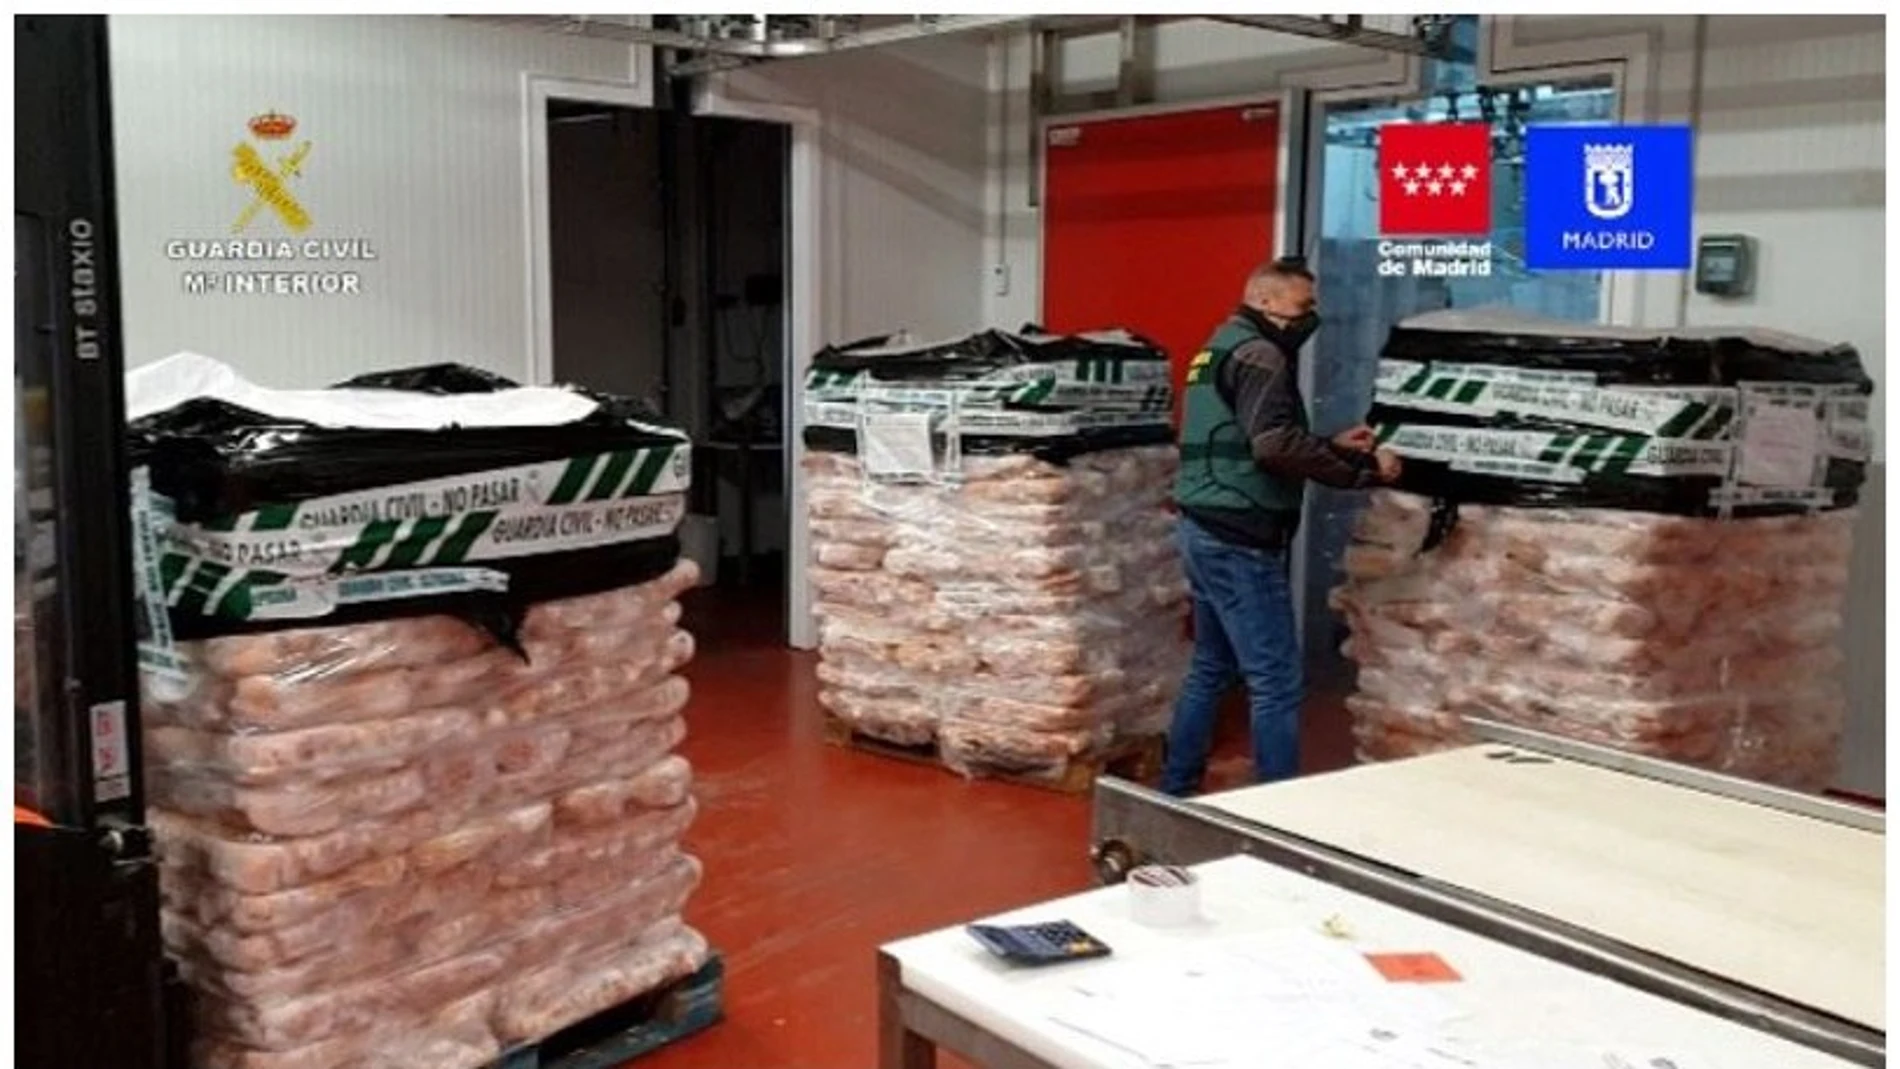 La carne se encontraba almacenada en empresas de las provincias de Madrid, Toledo y Málaga